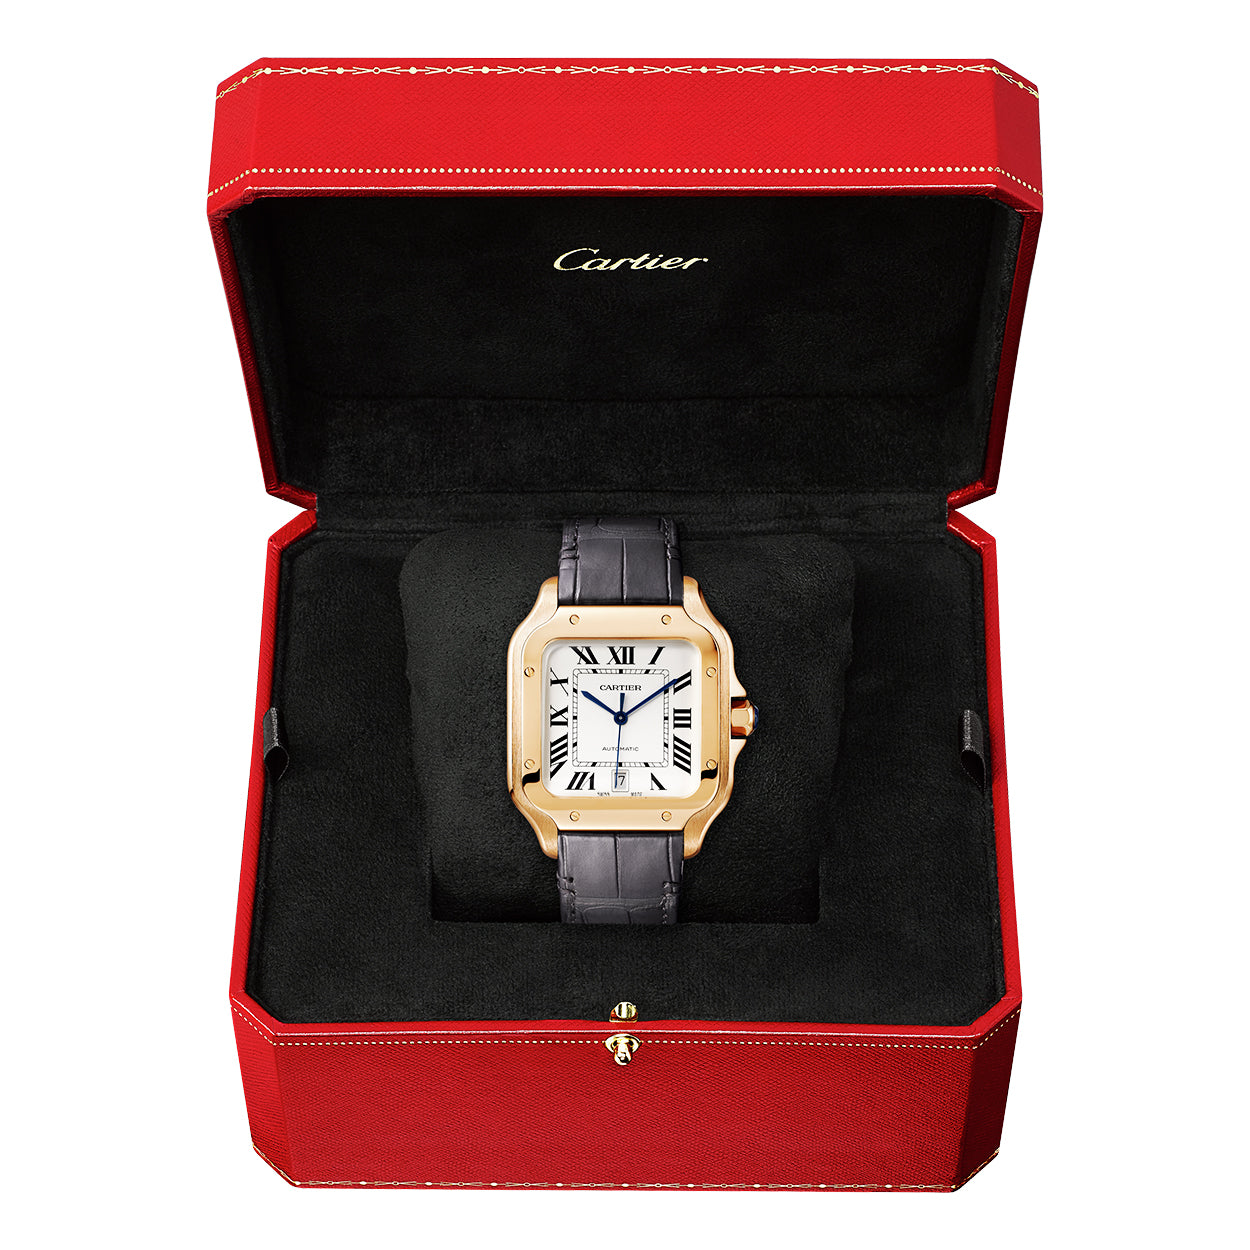 Santos de Cartier Large Automatic 18ct Rose Gold Watch